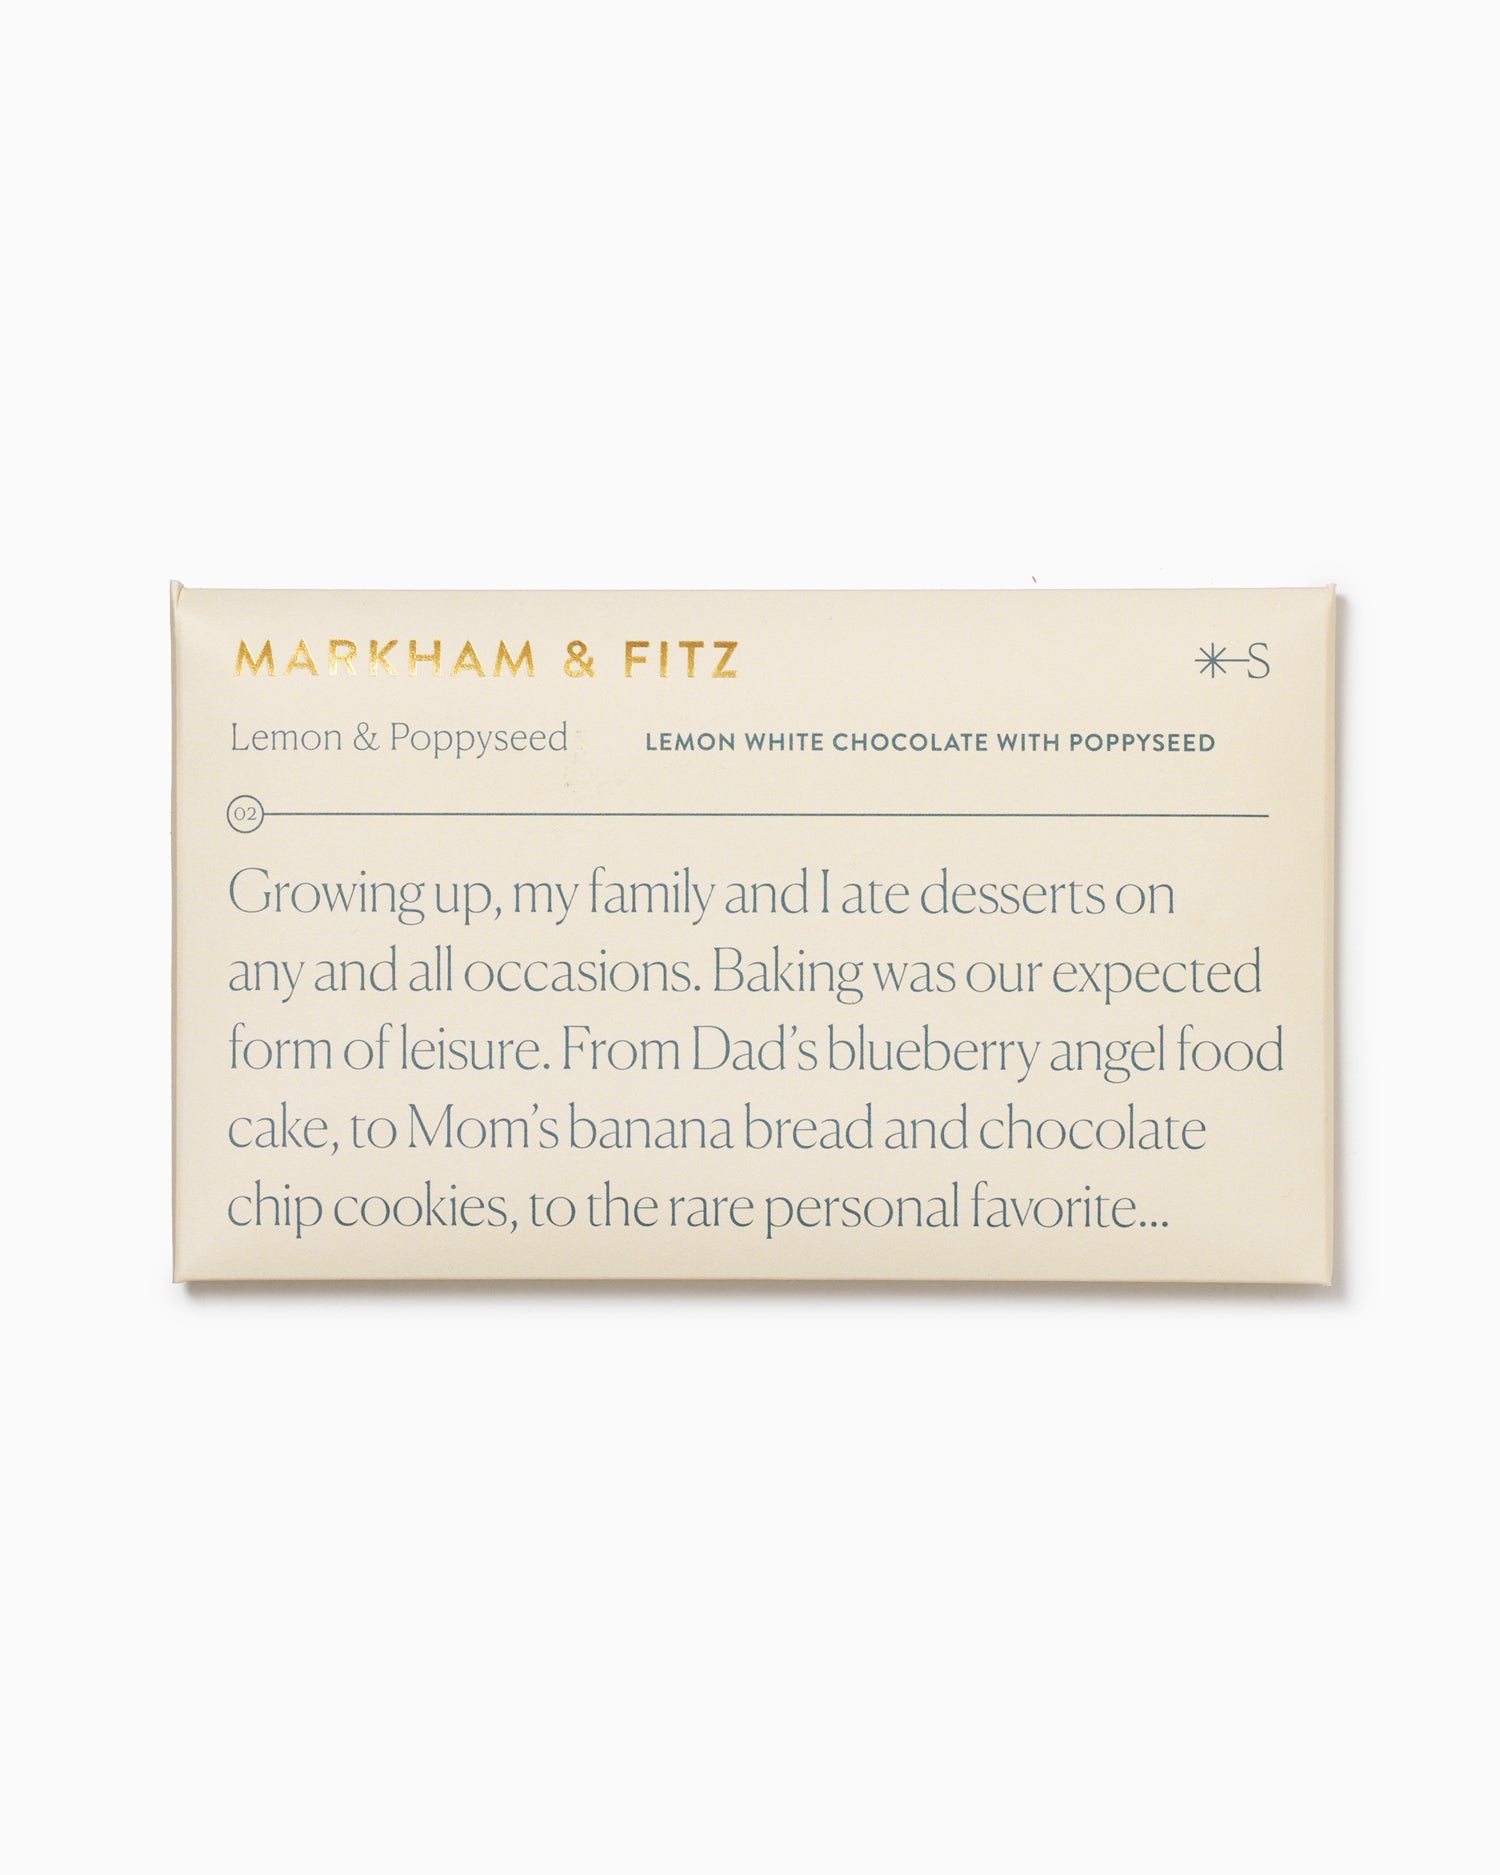 Lemon & Poppyseed - Markham & Fitz